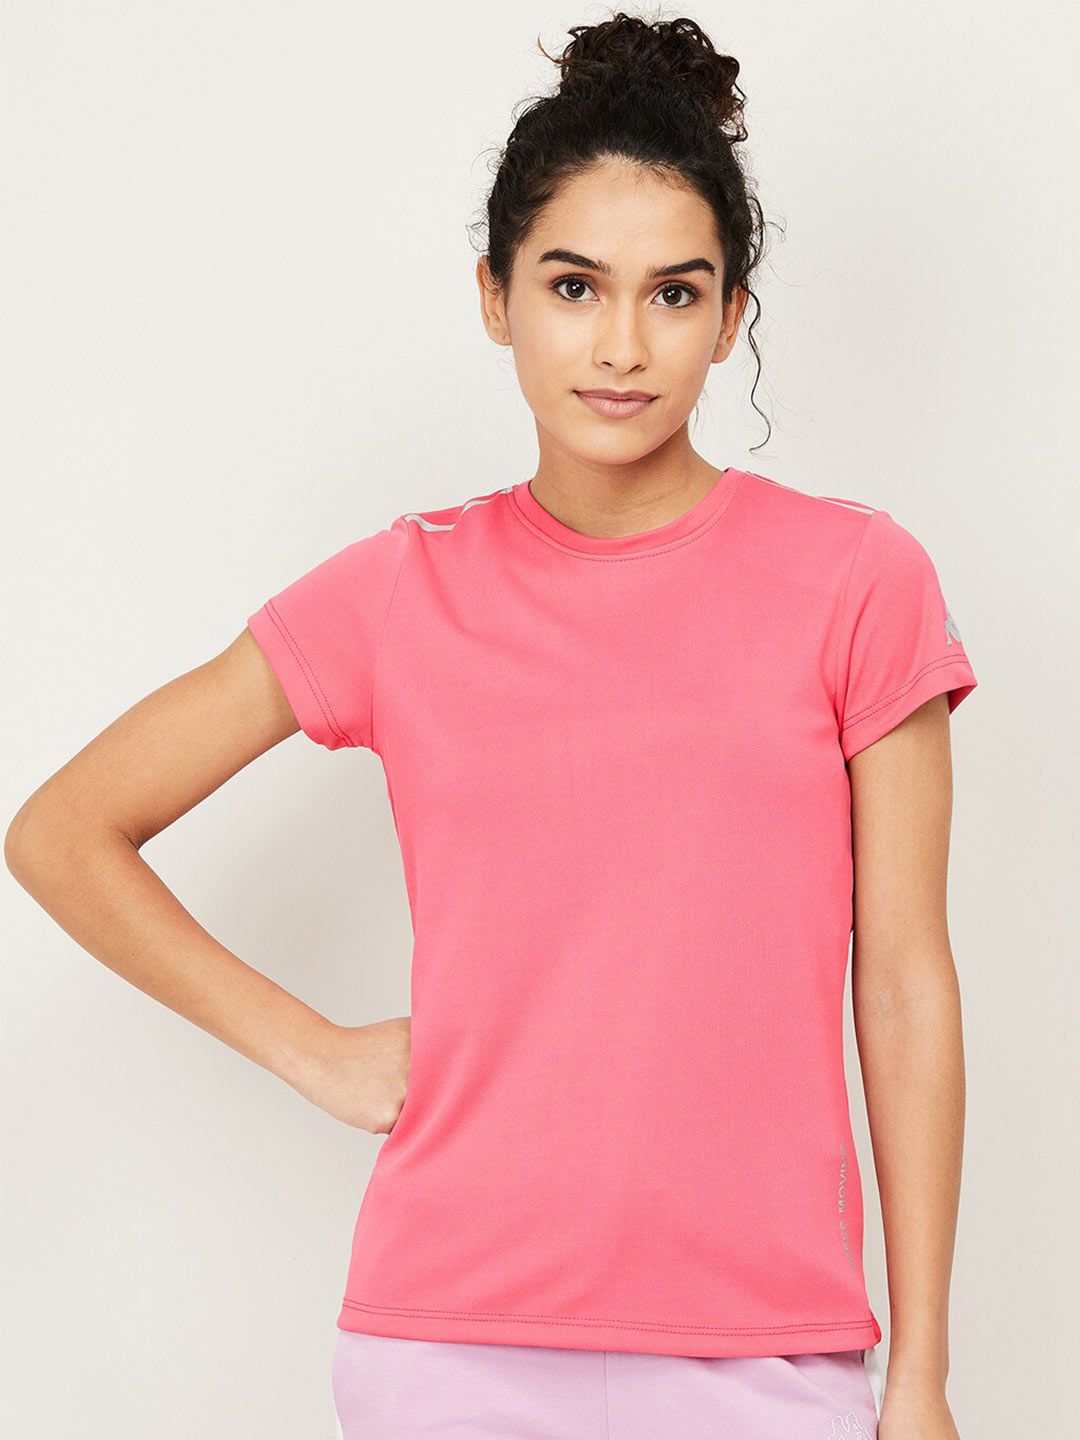 Kappa Women Pink T-shirt Price in India